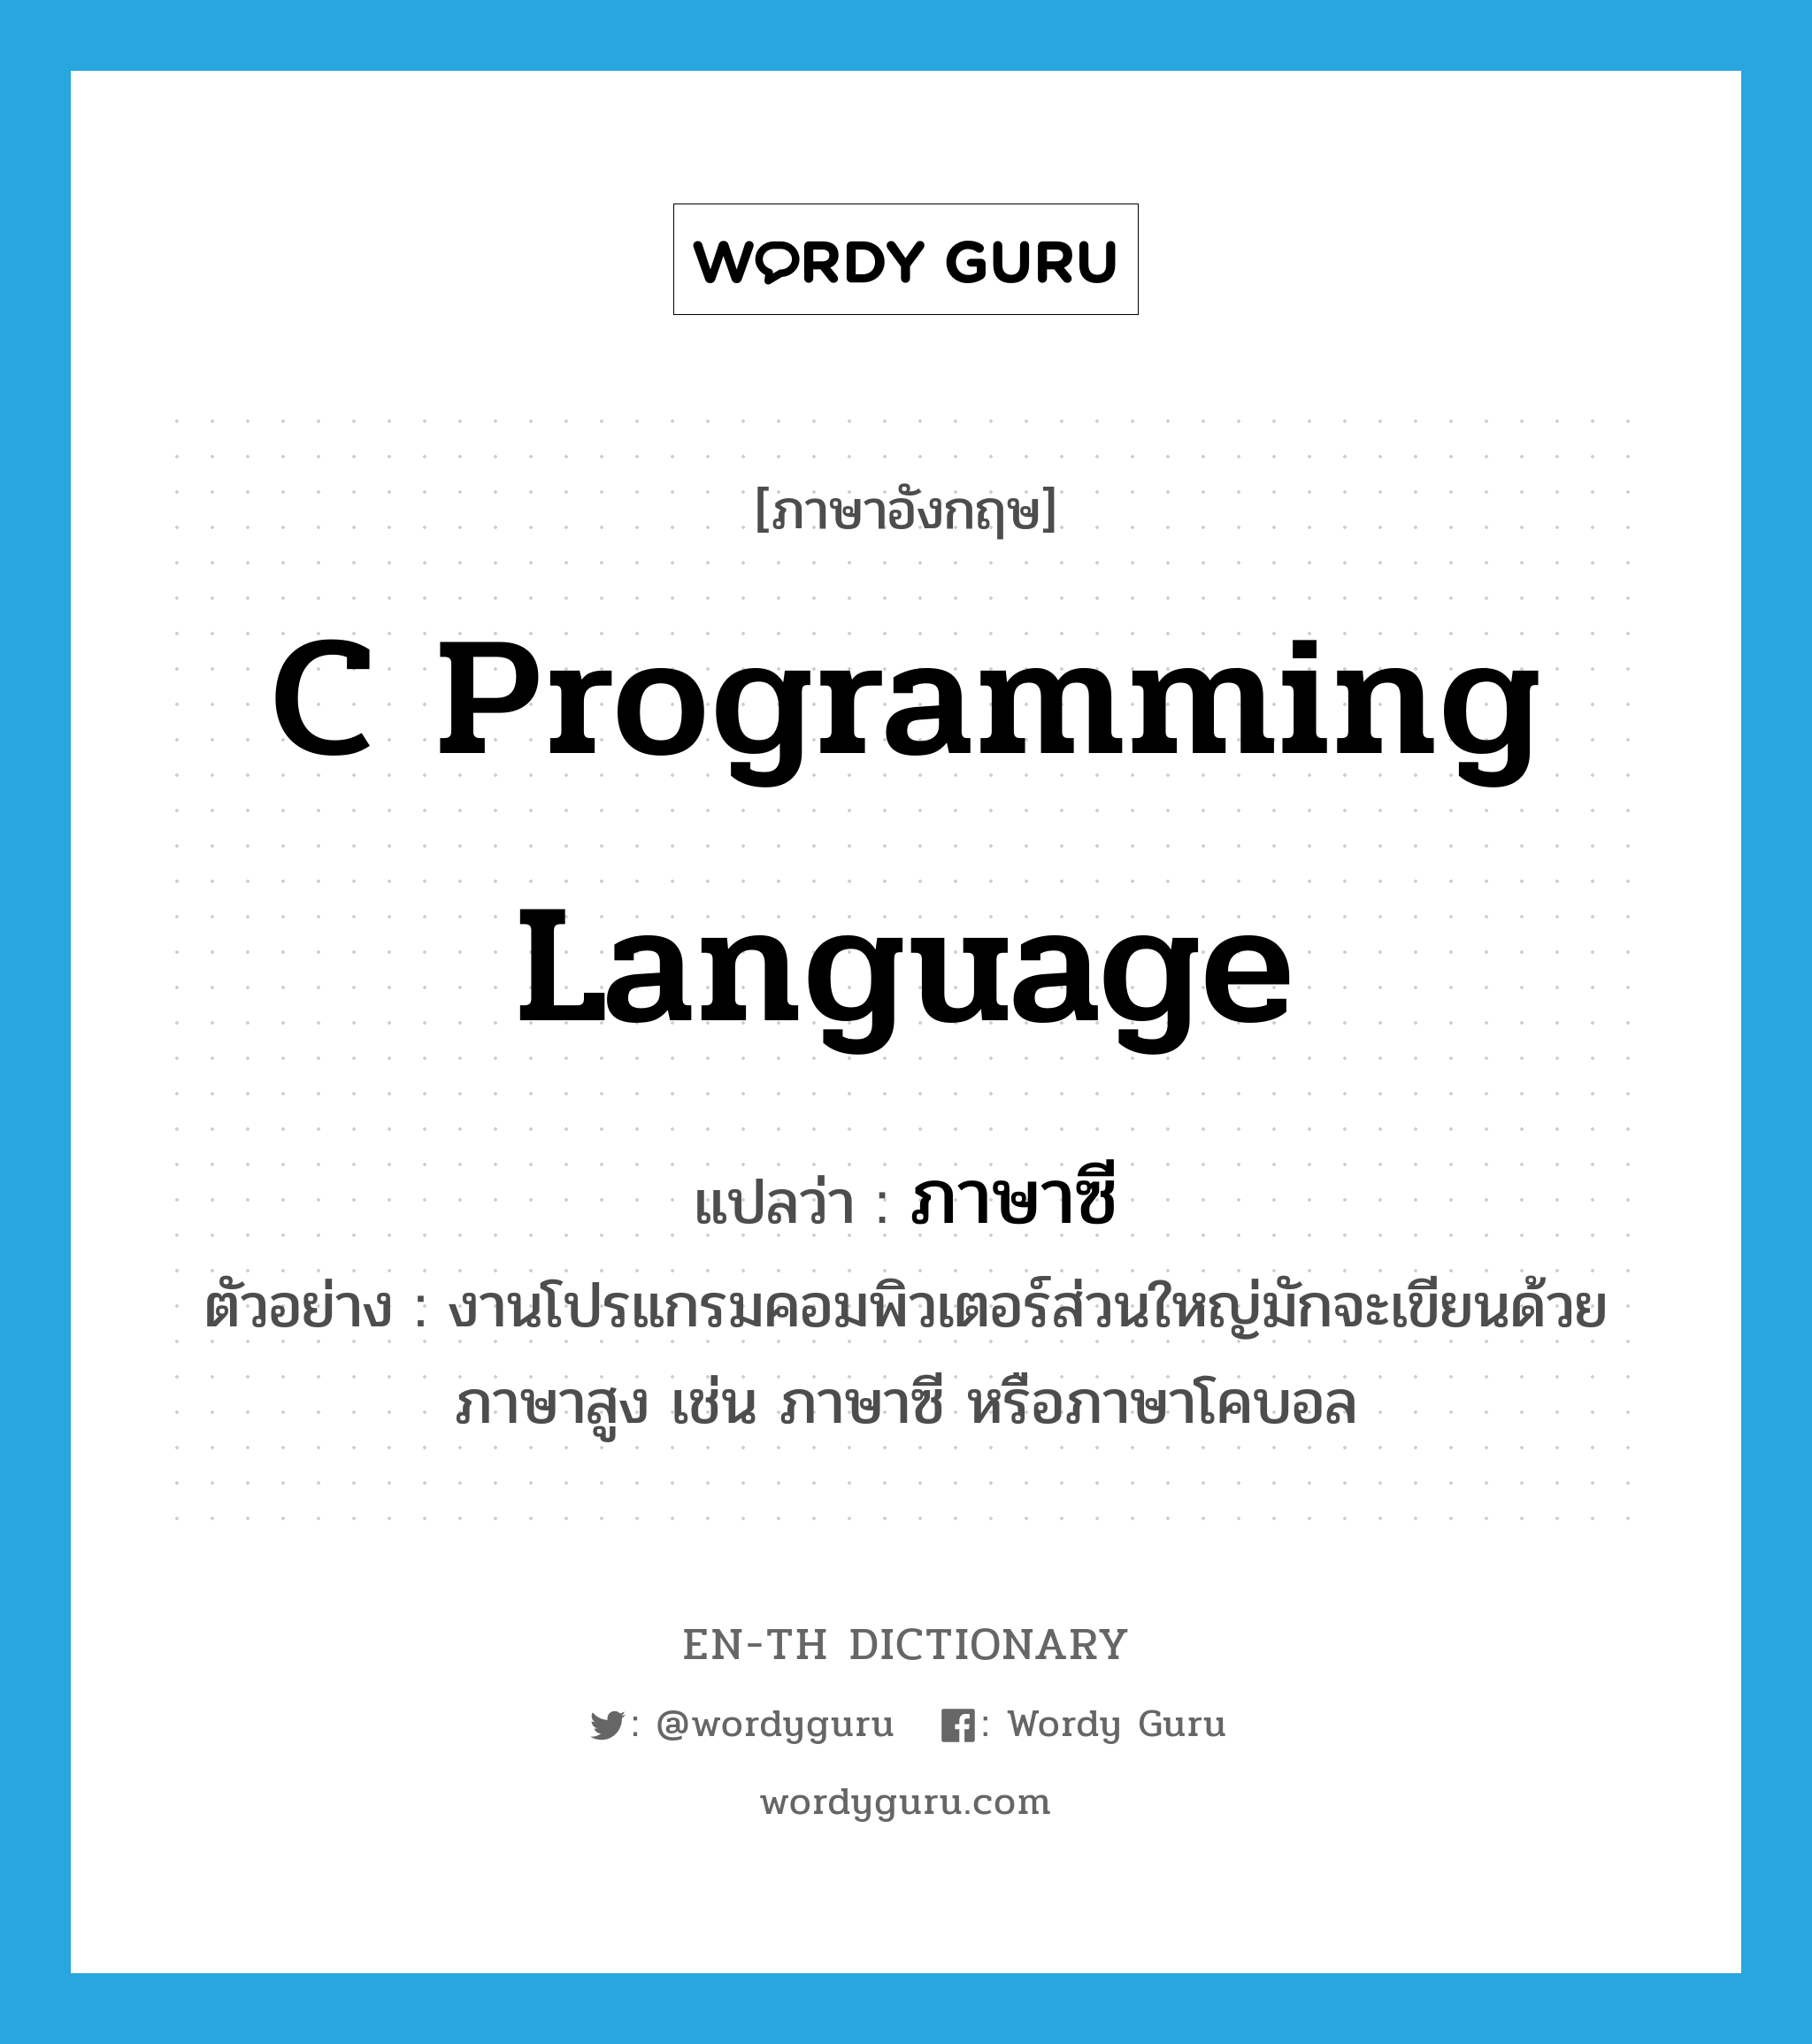 C programming language แปลว่า?, คำศัพท์ภาษาอังกฤษ C programming language แปลว่า ภาษาซี ประเภท N ตัวอย่าง งานโปรแกรมคอมพิวเตอร์ส่วนใหญ่มักจะเขียนด้วยภาษาสูง เช่น ภาษาซี หรือภาษาโคบอล หมวด N